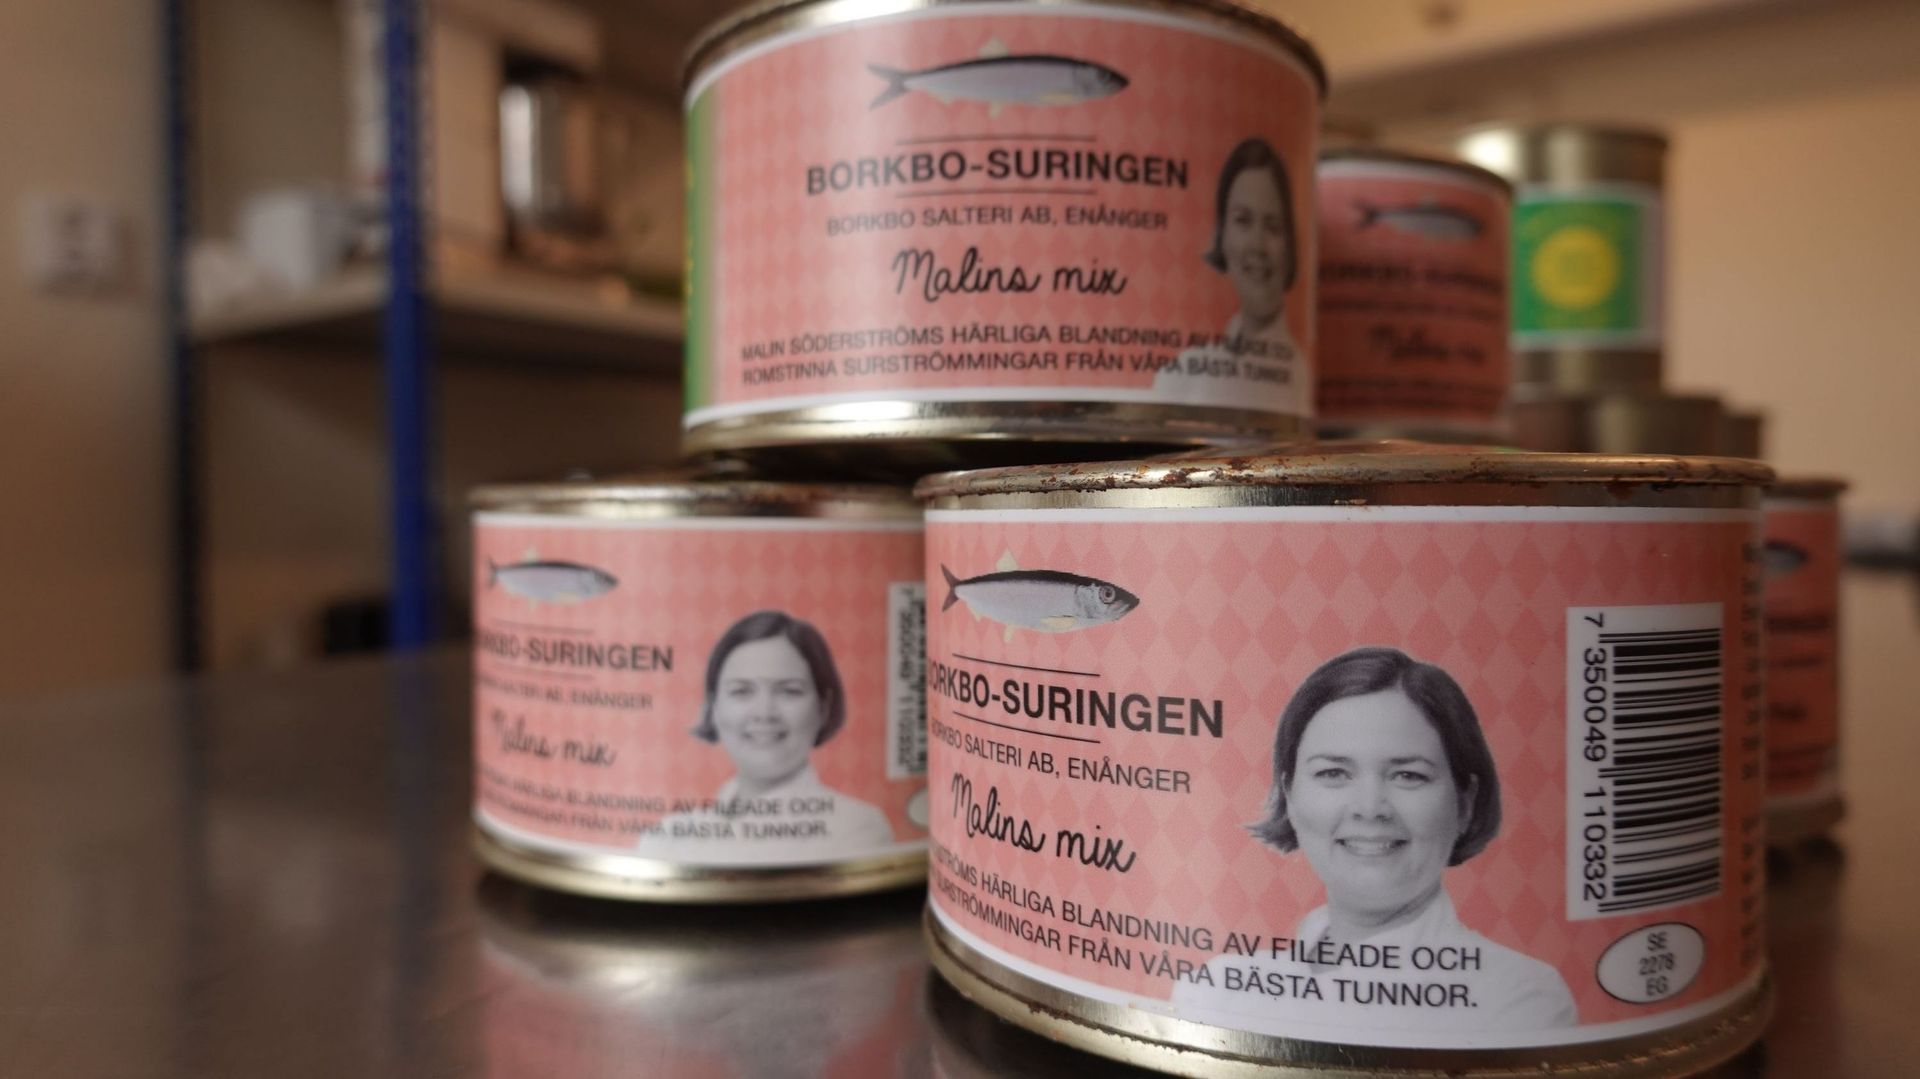 En Suède, une chef tente de redorer le blason du surströmming, un hareng  malodorant 